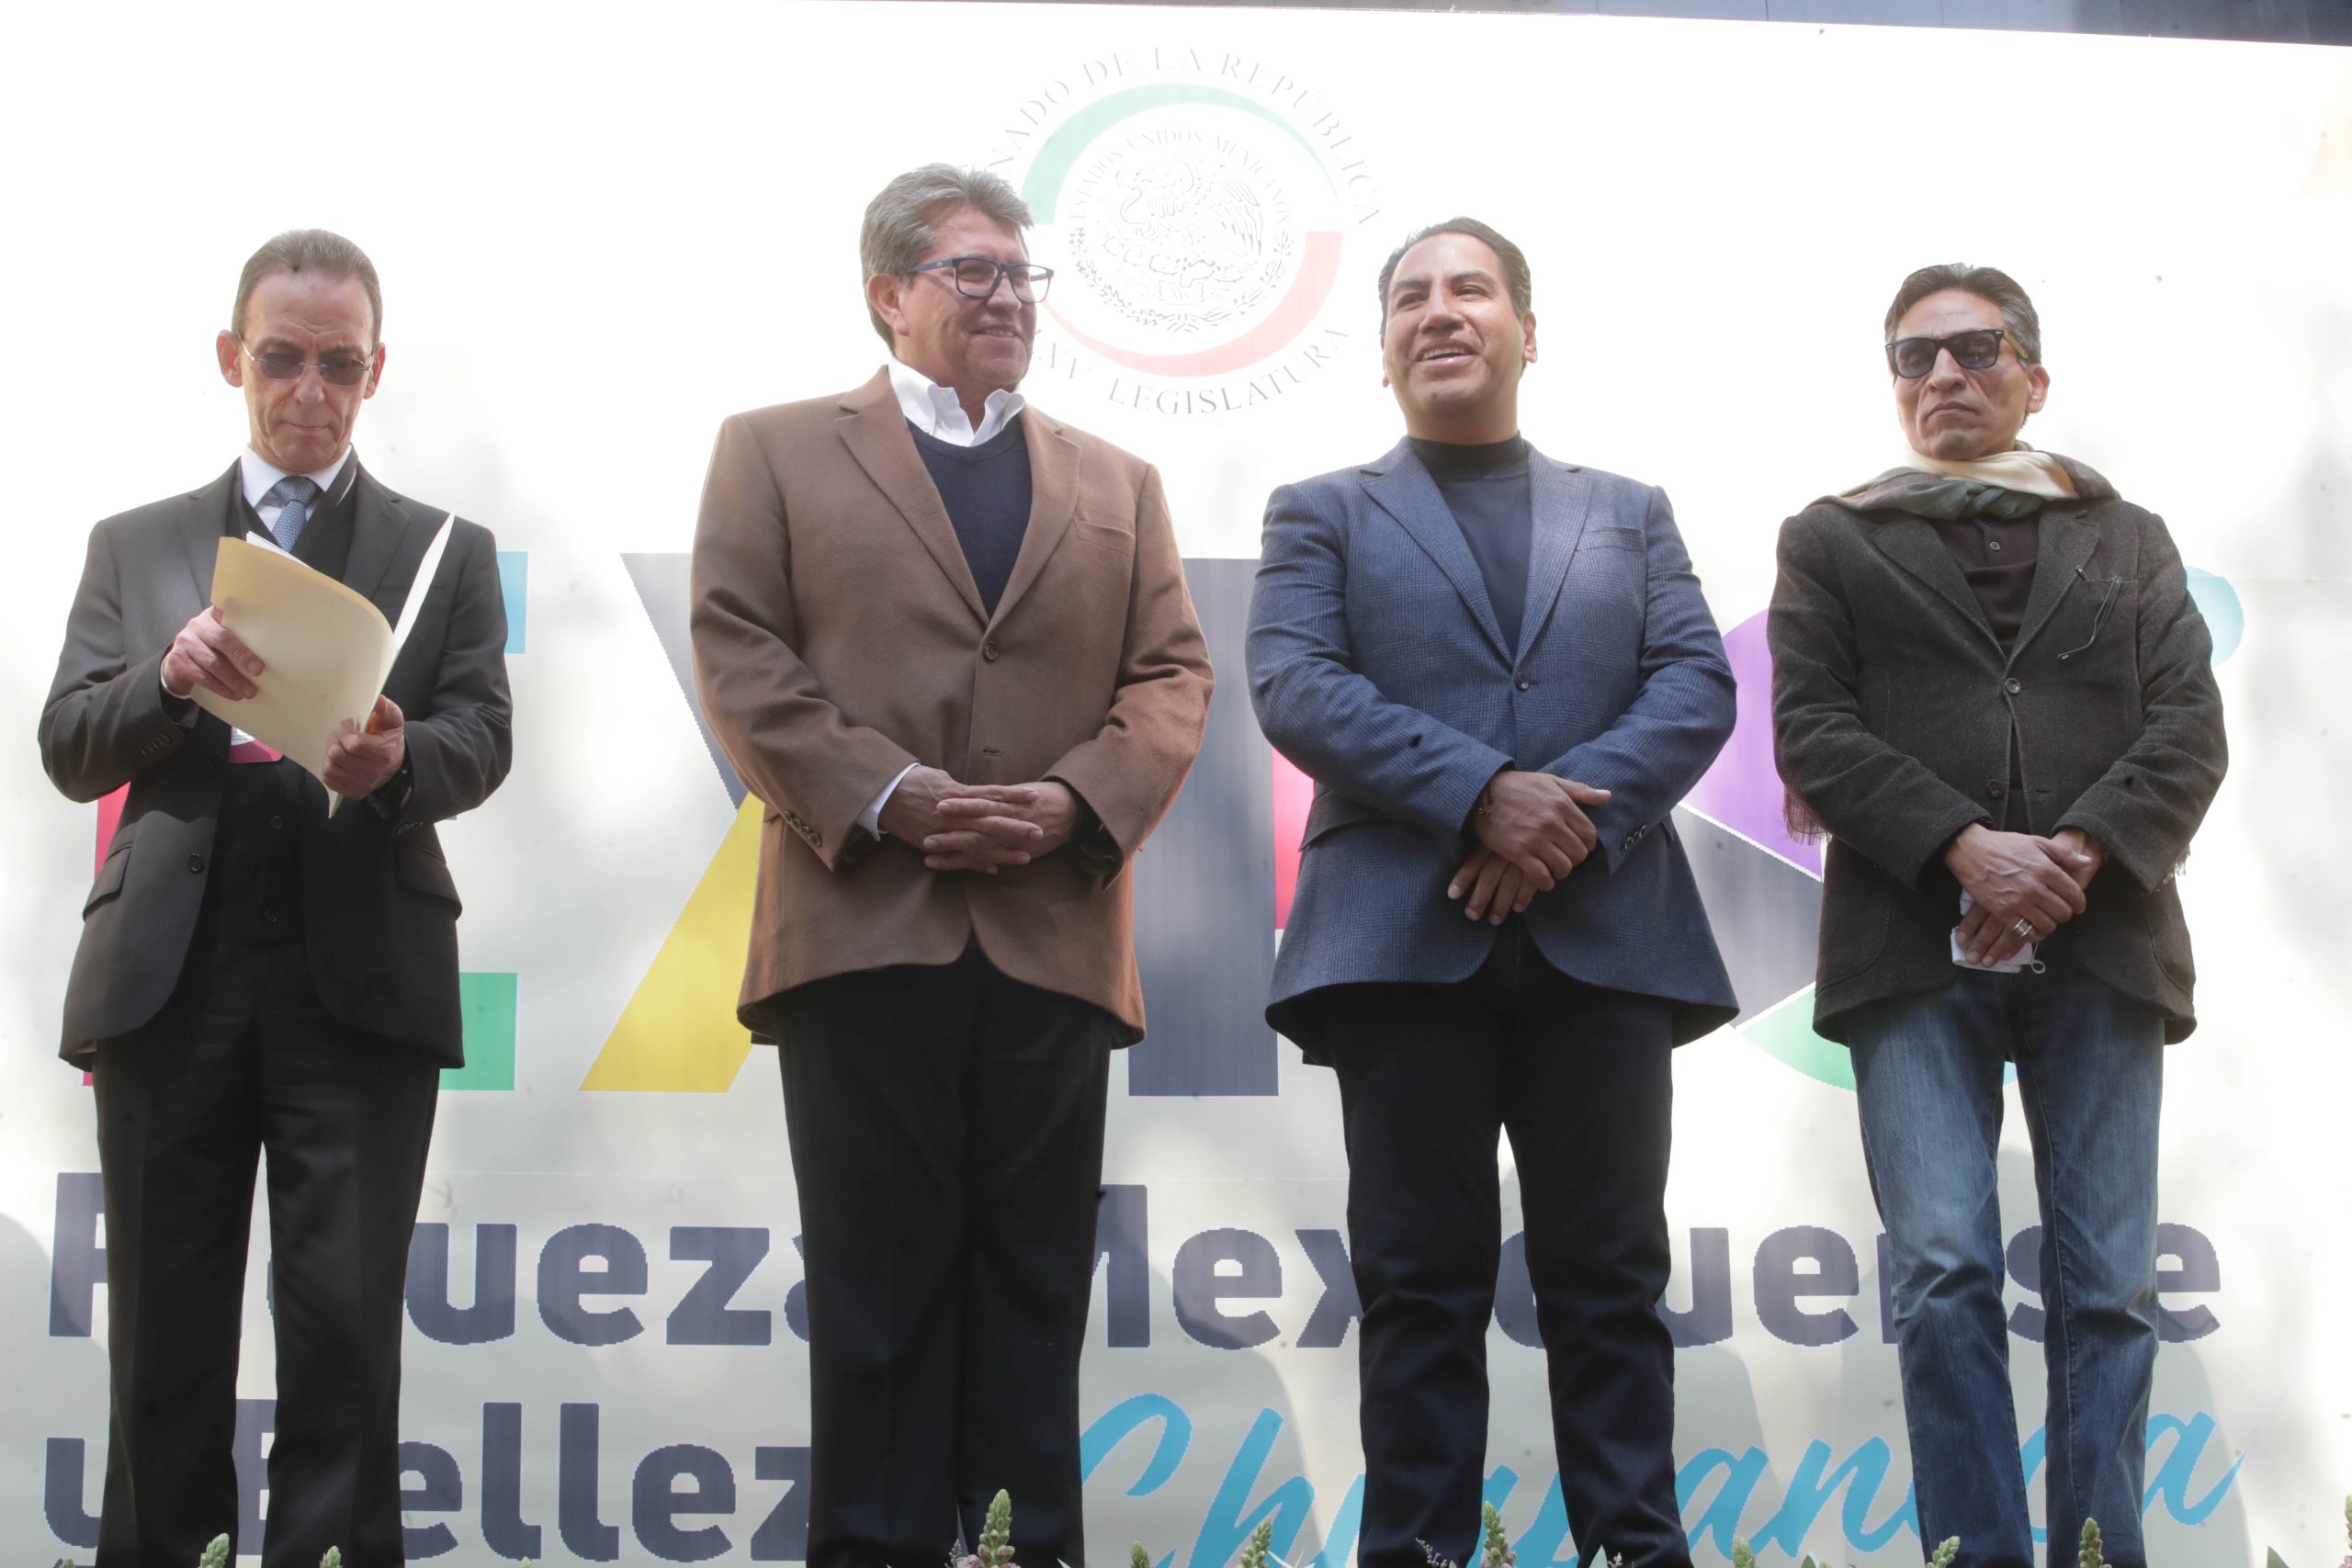 Los partidos políticos y aspirantes presidenciales están obligados a cumplir la ley: Ricardo Monreal